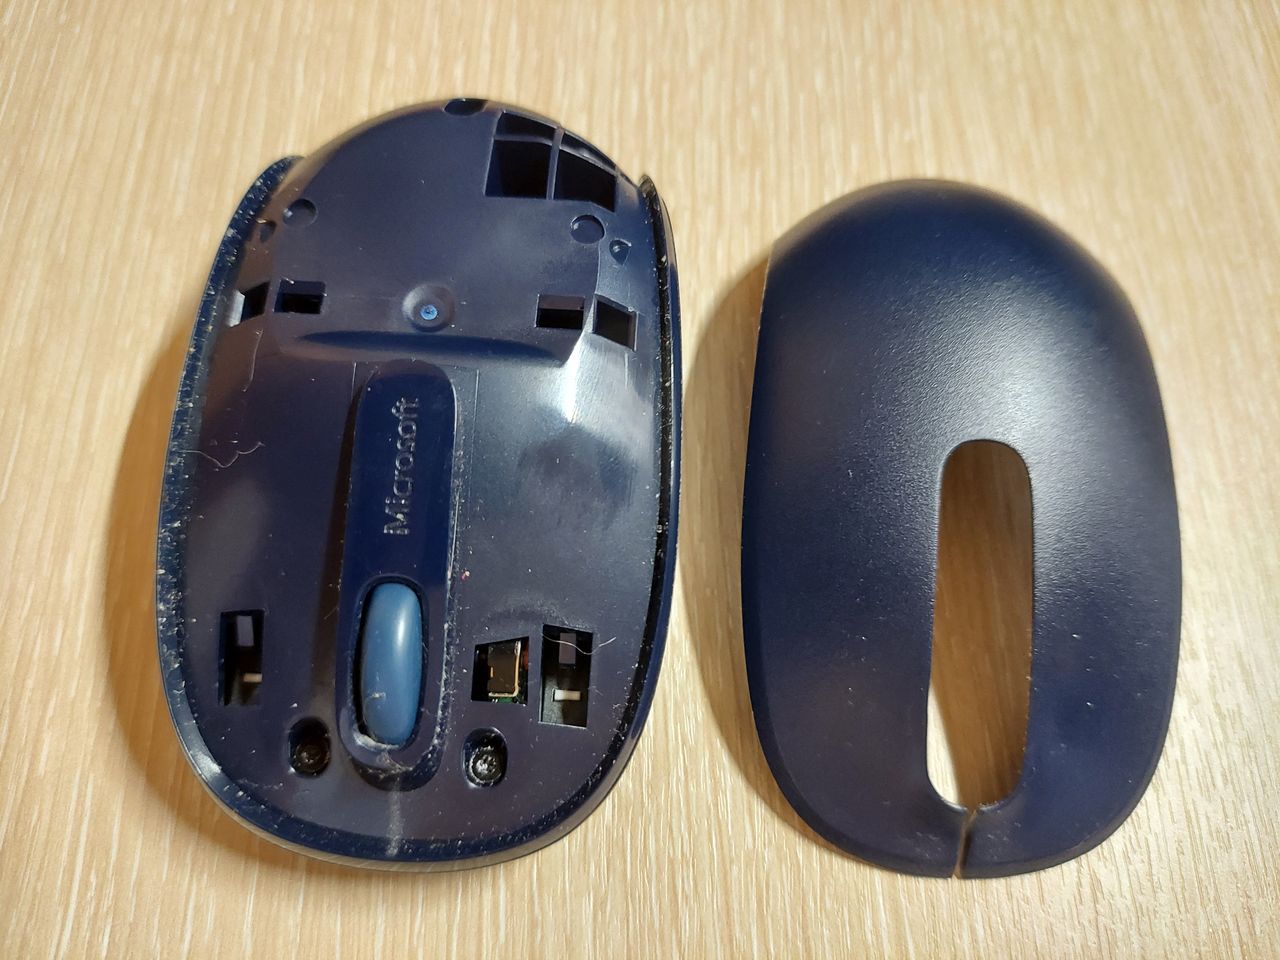 Ремонт компьютерной мыши.